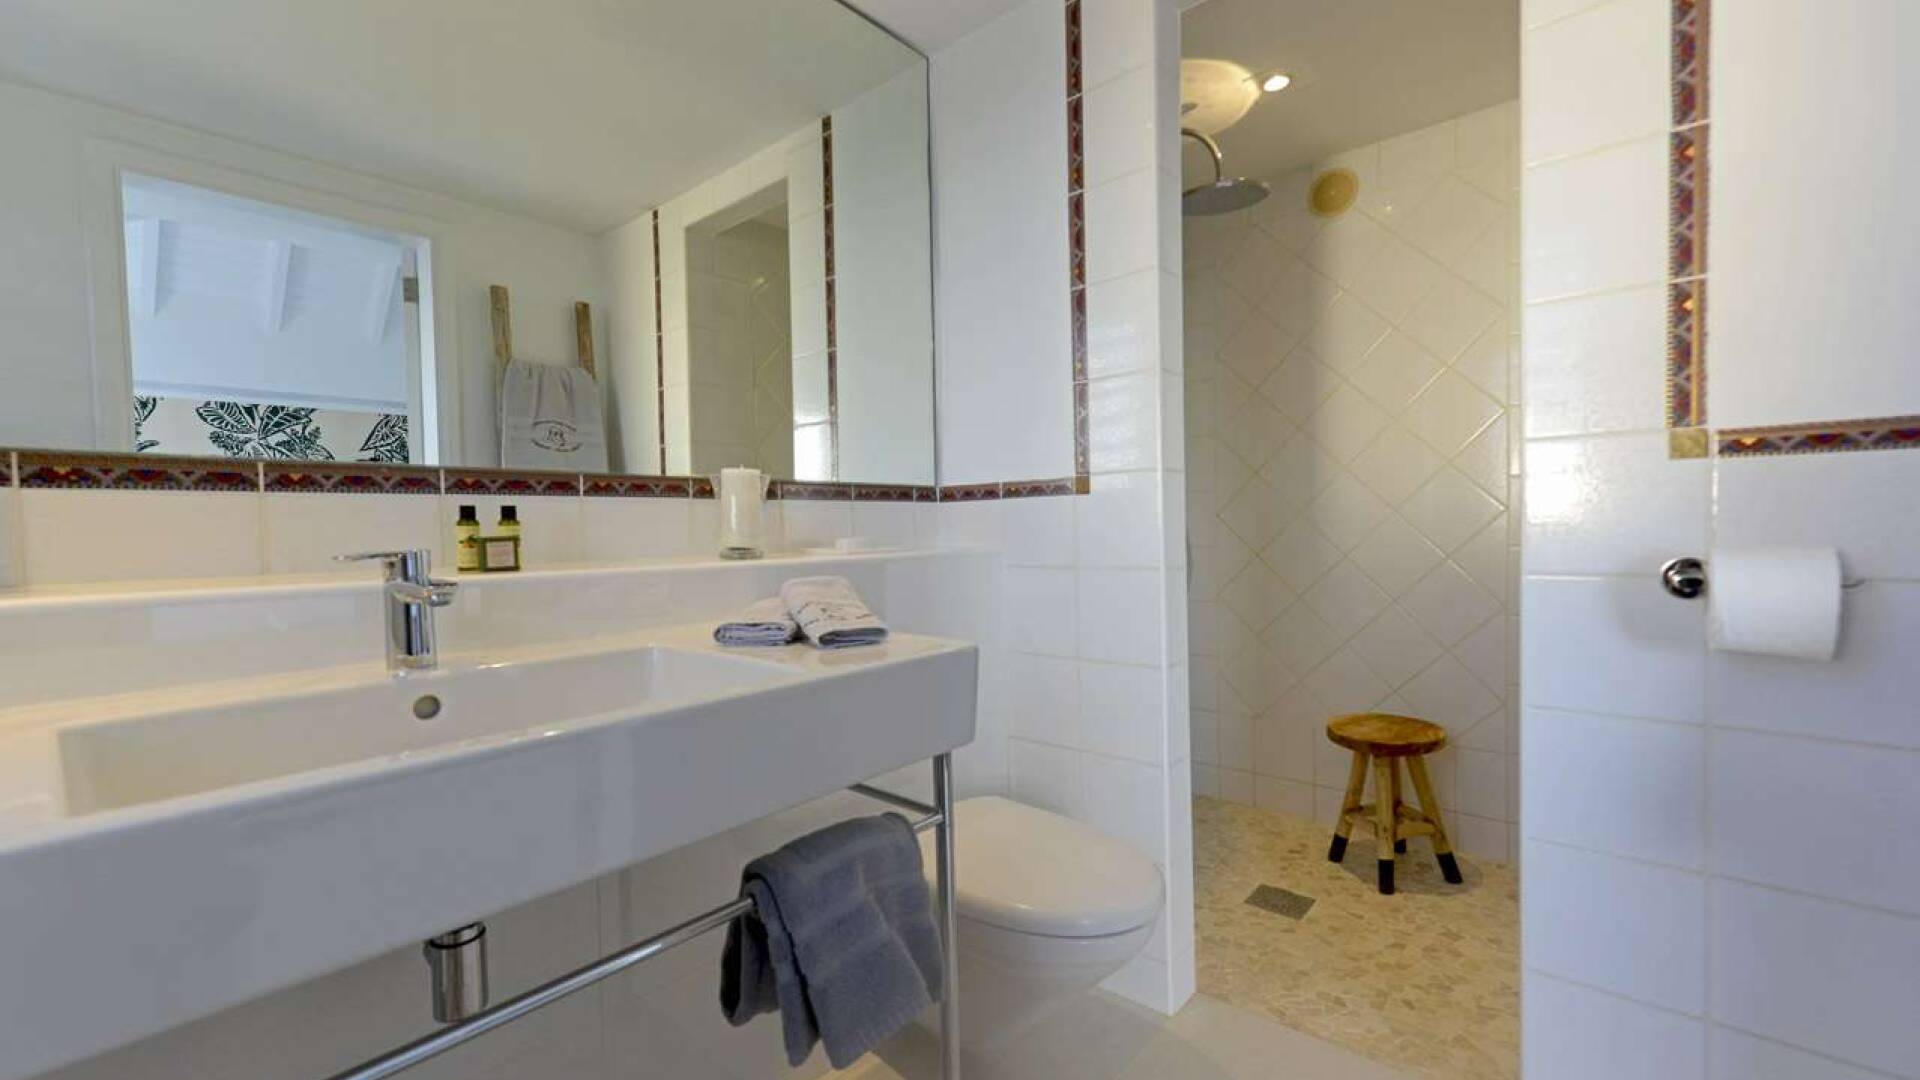 Bathroom at WV LAR, Petit Cul de Sac, St. Barthelemy